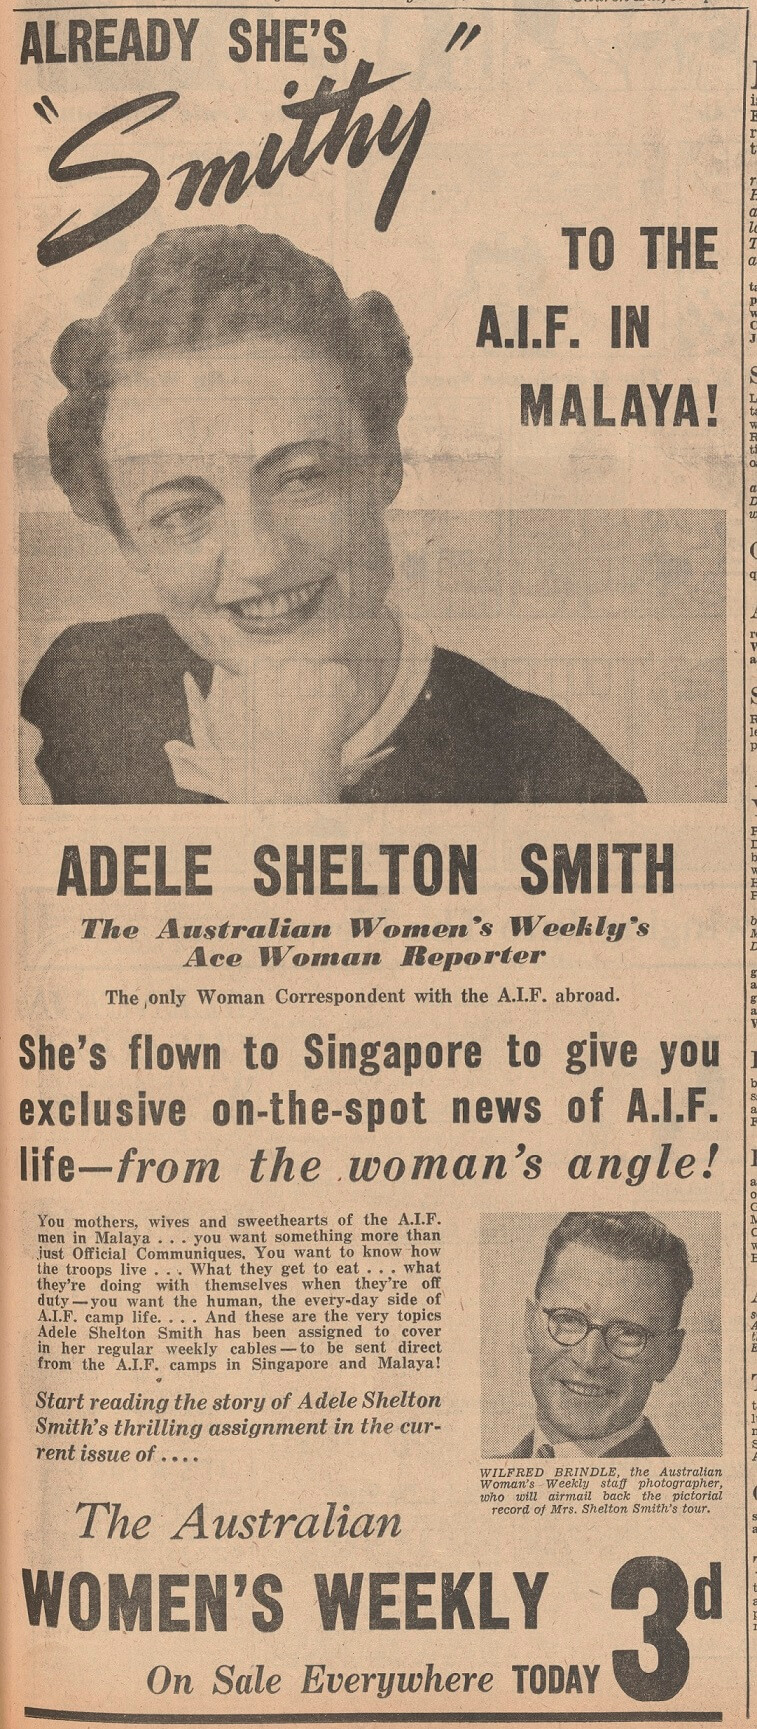 Adele Shelton Smith